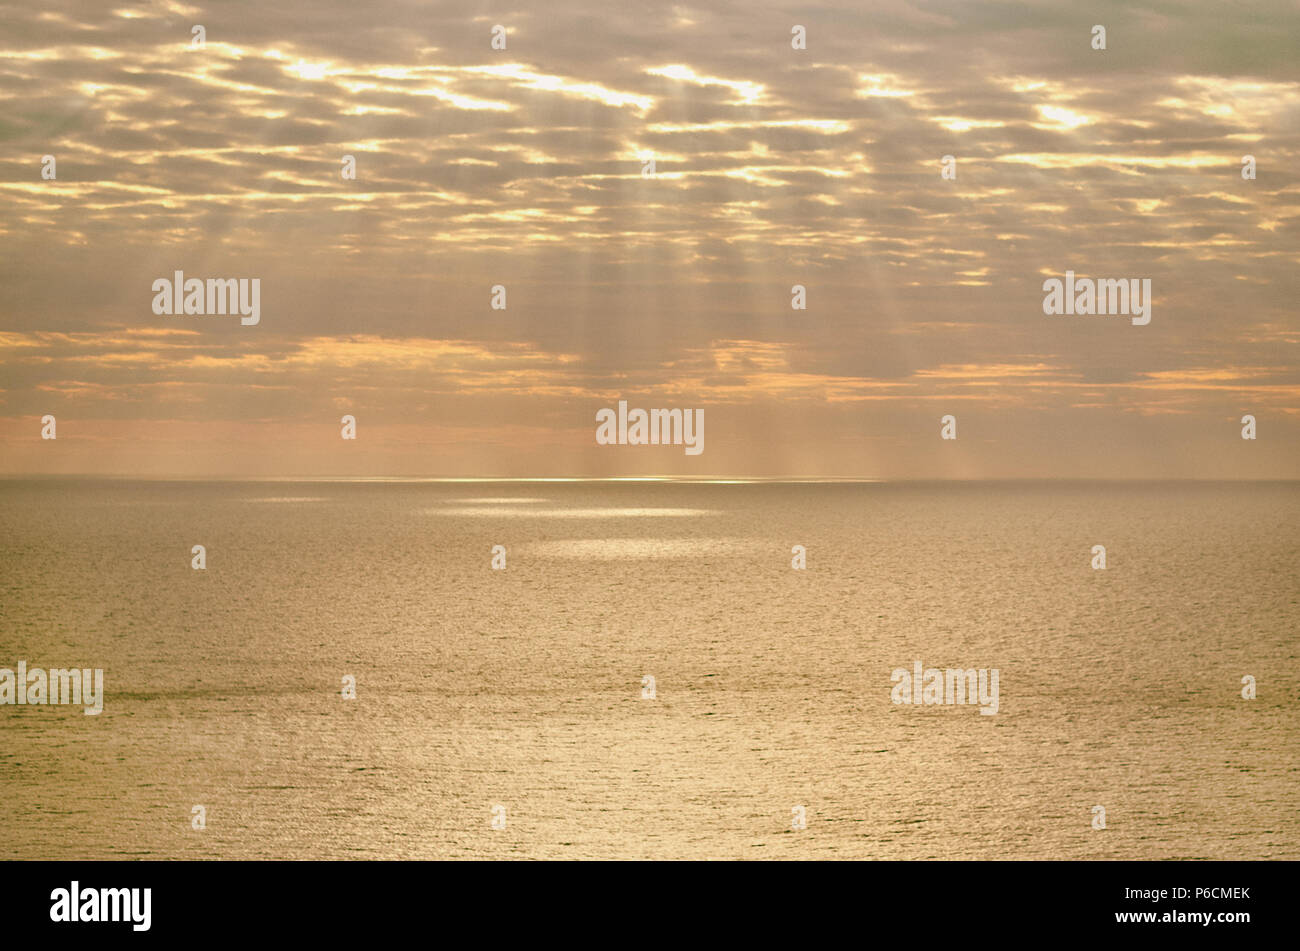 Les rayons de lumière sur la mer Méditerranée au coucher du soleil. L'île d'Ibiza, Baléares. Espagne Banque D'Images